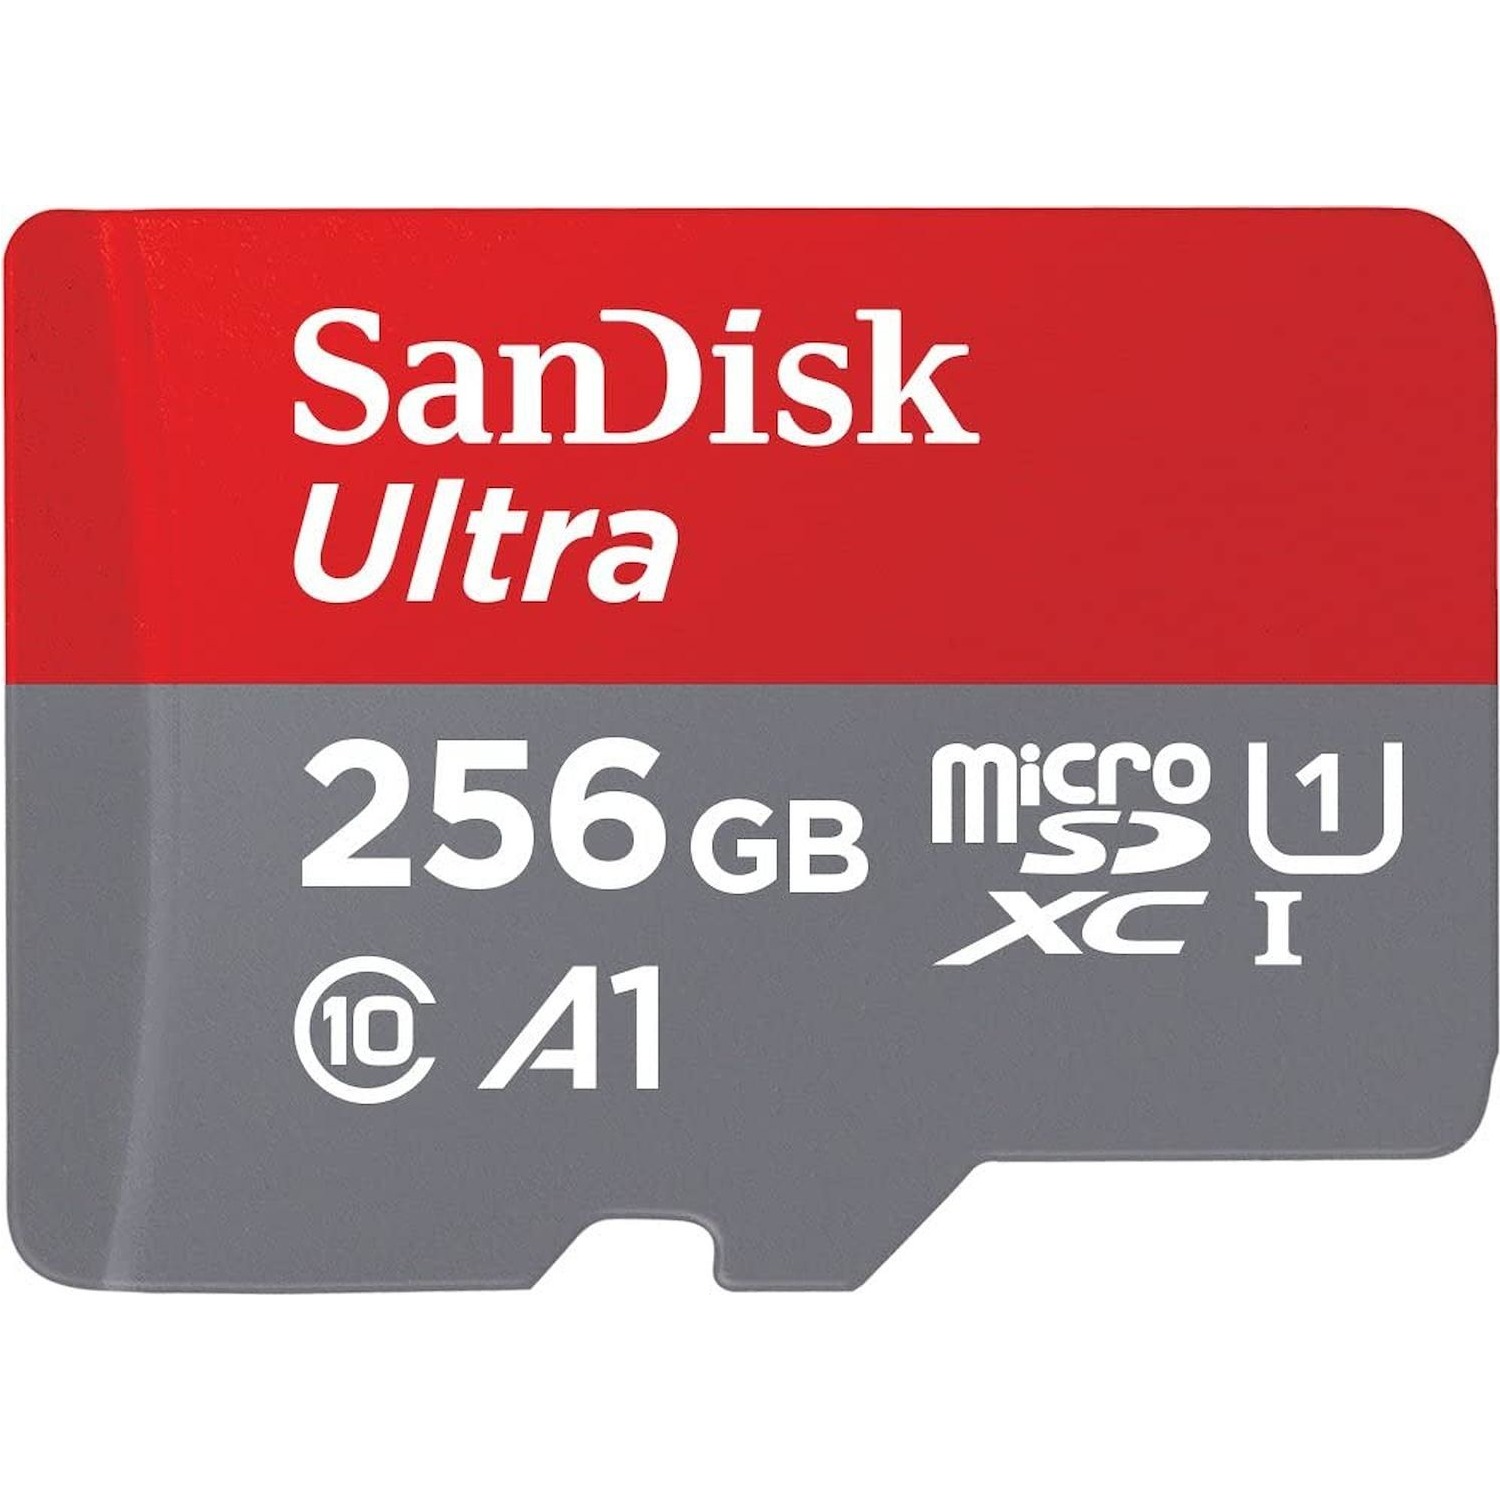 Immagine per MicroSD San DisK Ultra Mobile Android 256GB XC conadattatore SD da DIMOStore